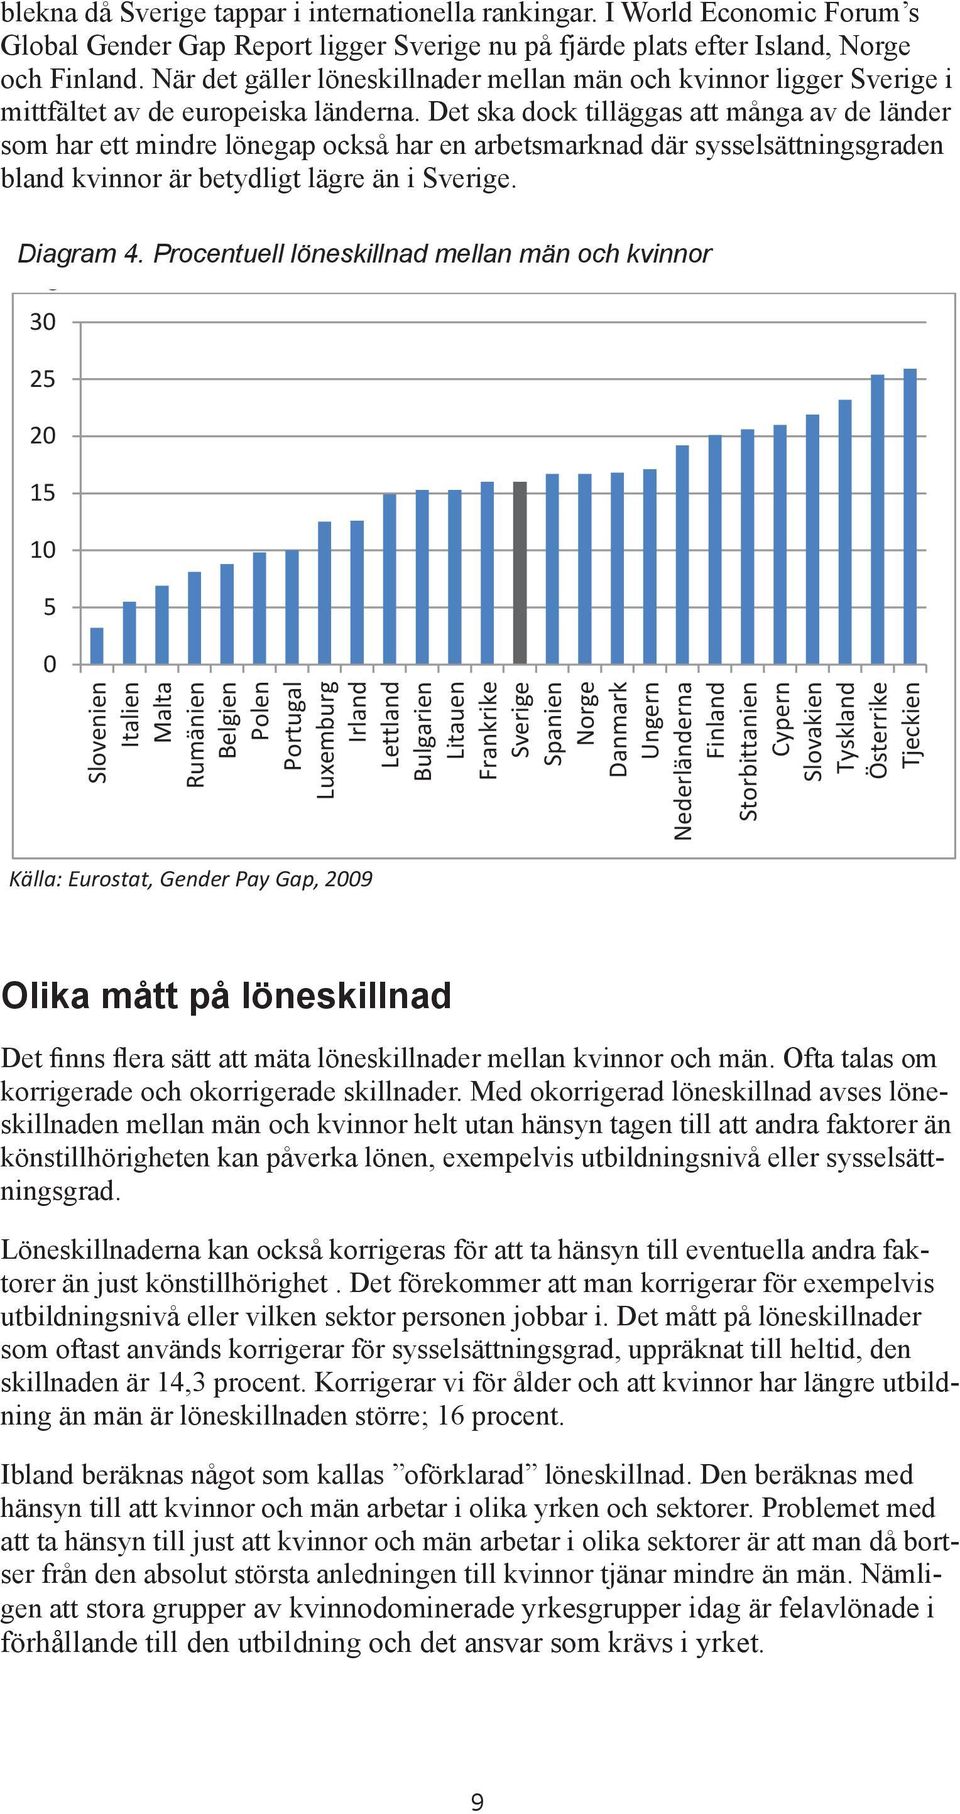 och Finland. När det gäller löneskillnader mellan män och Finland.